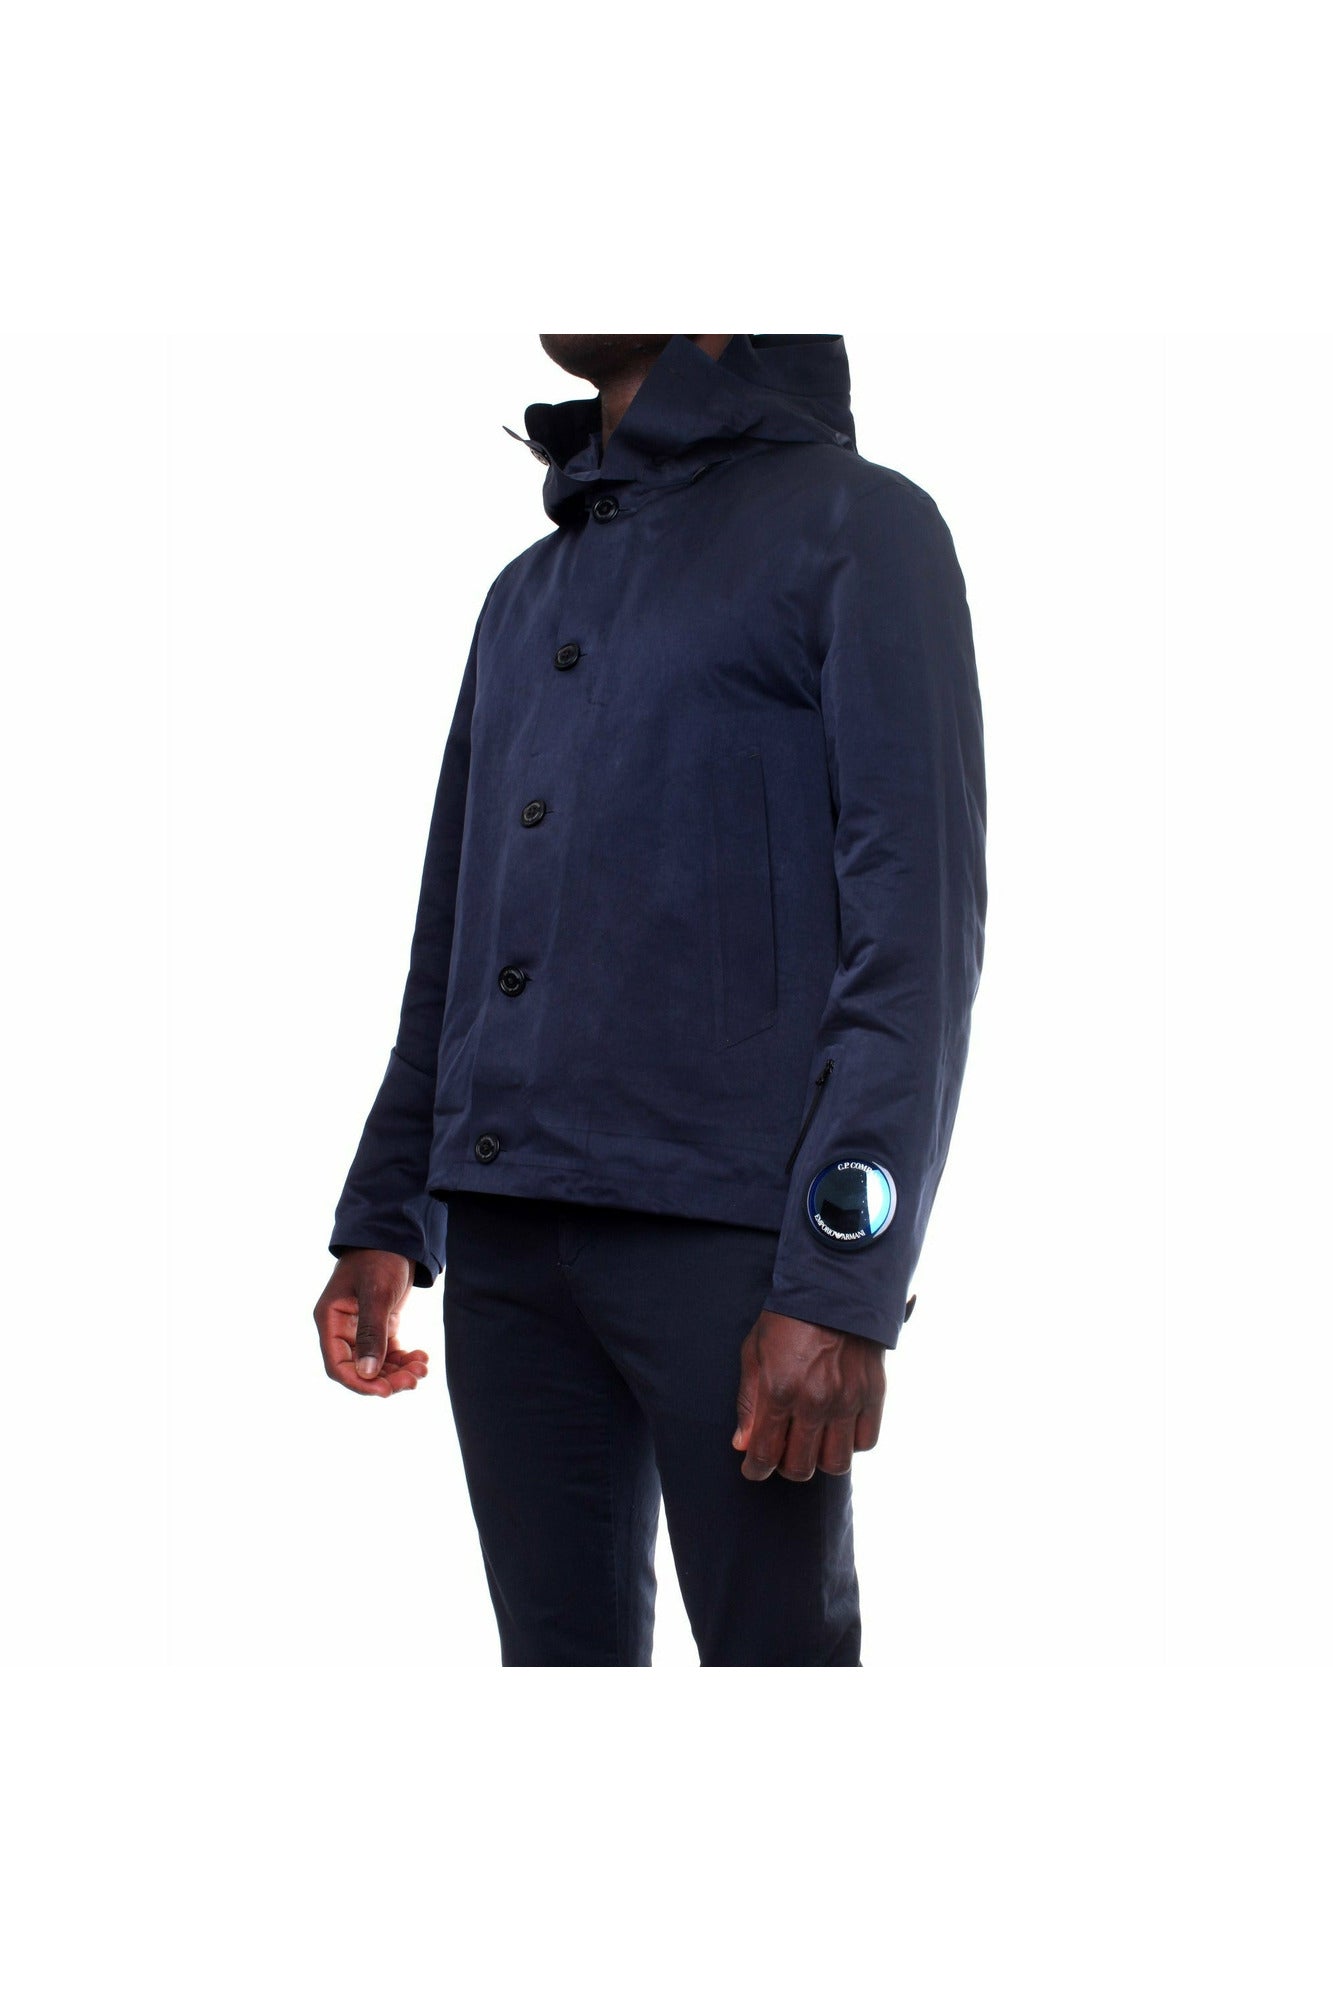 EmporioArmaniforC.P.Company 11CMOW391A-006258A giacca a vento con cappuccio fisso con occhiali incorporati e patch con logo sulla manica